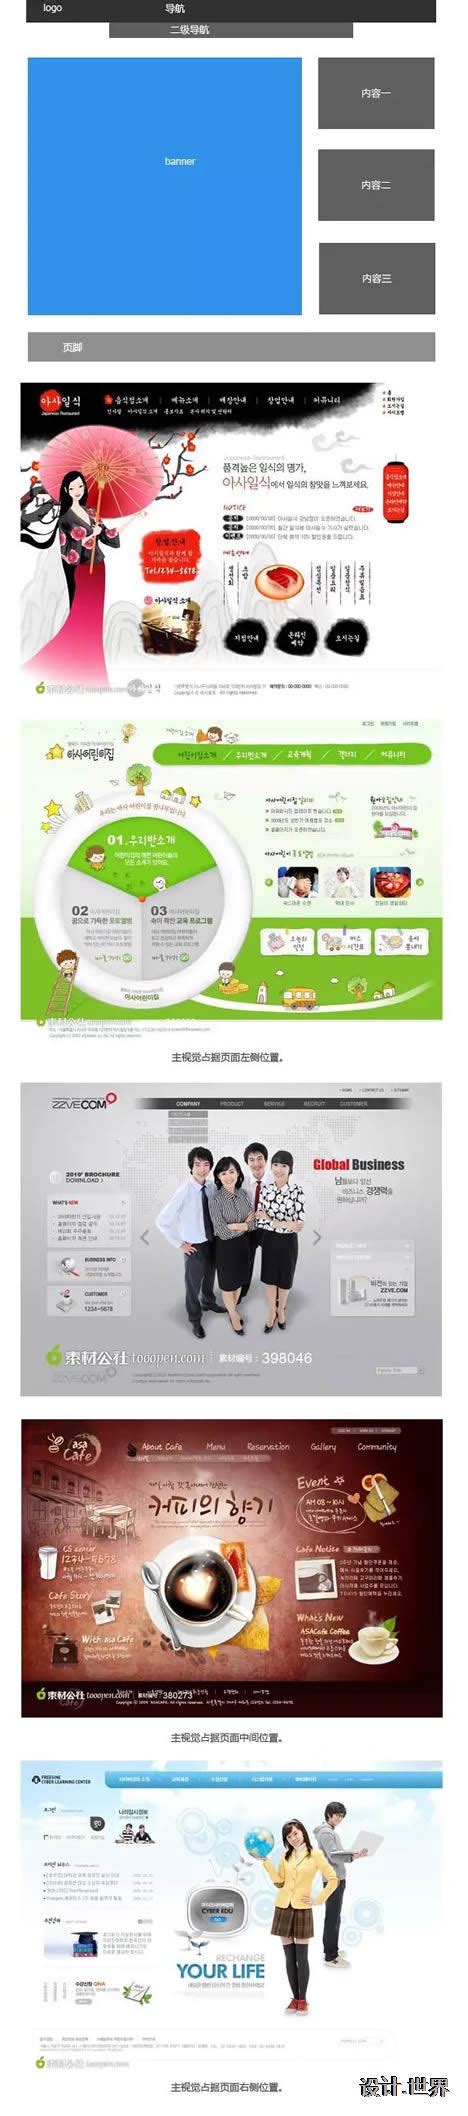 企业网站首页设计常见的6种布局方式—上海网页制作上海网页设计公司—酷创动力